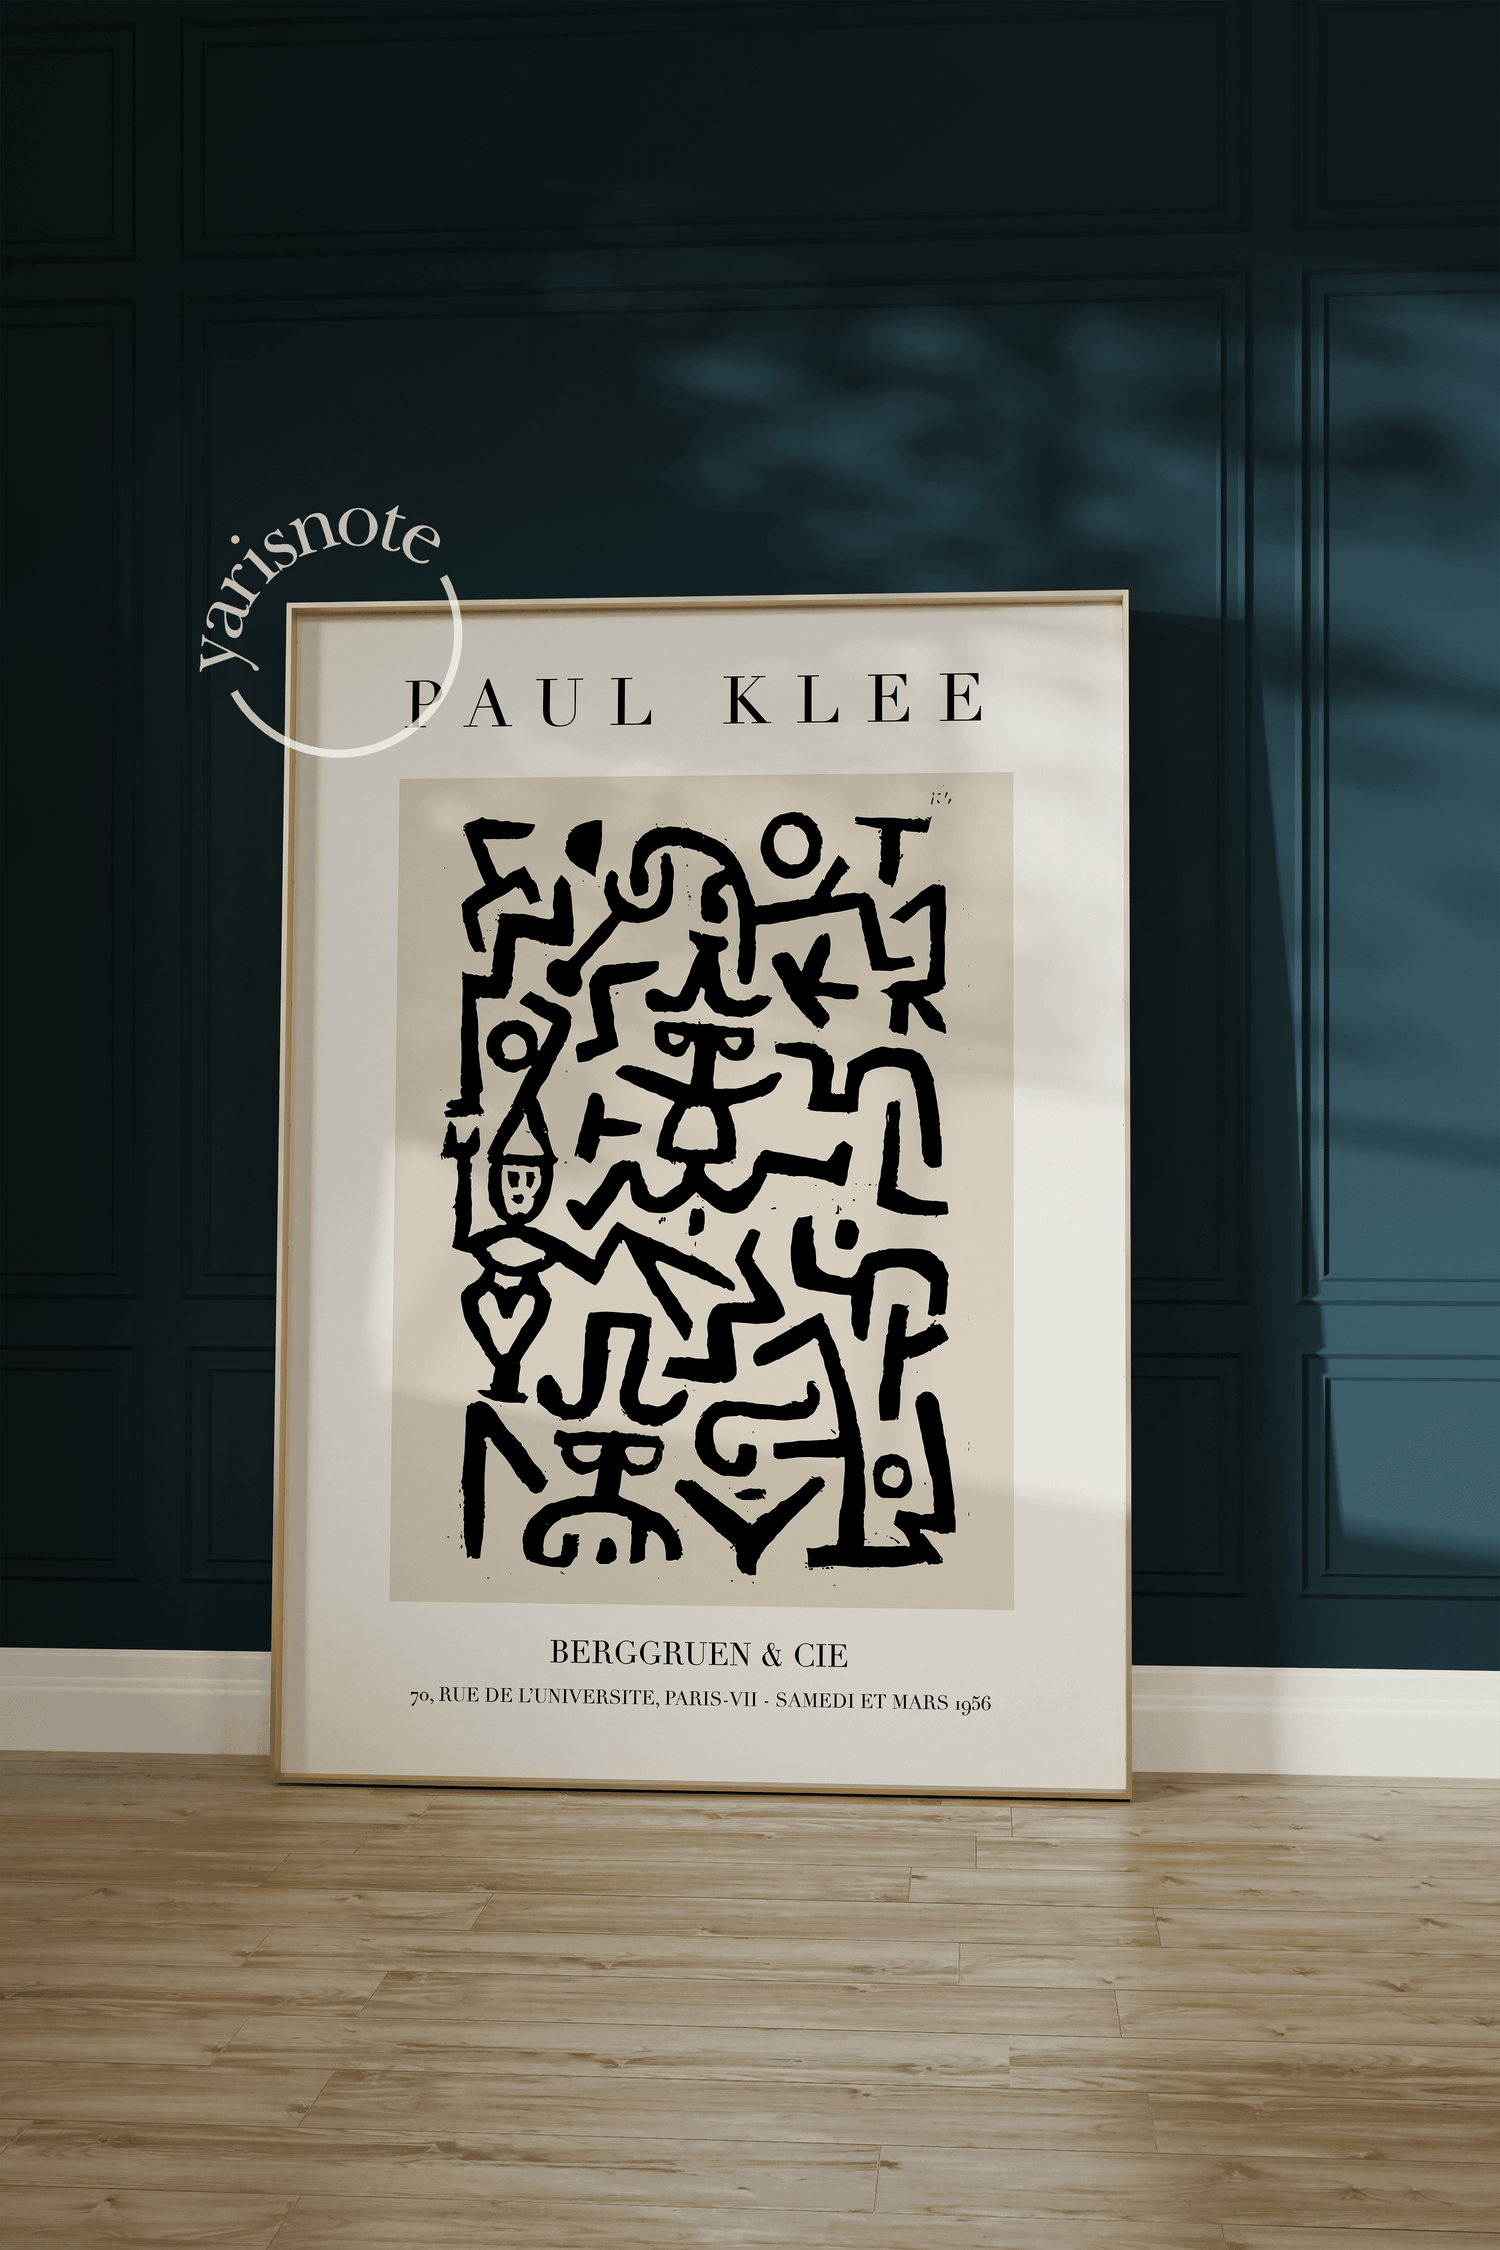 Paul Klee Komedyenin El İlanı Çerçevesiz Poster